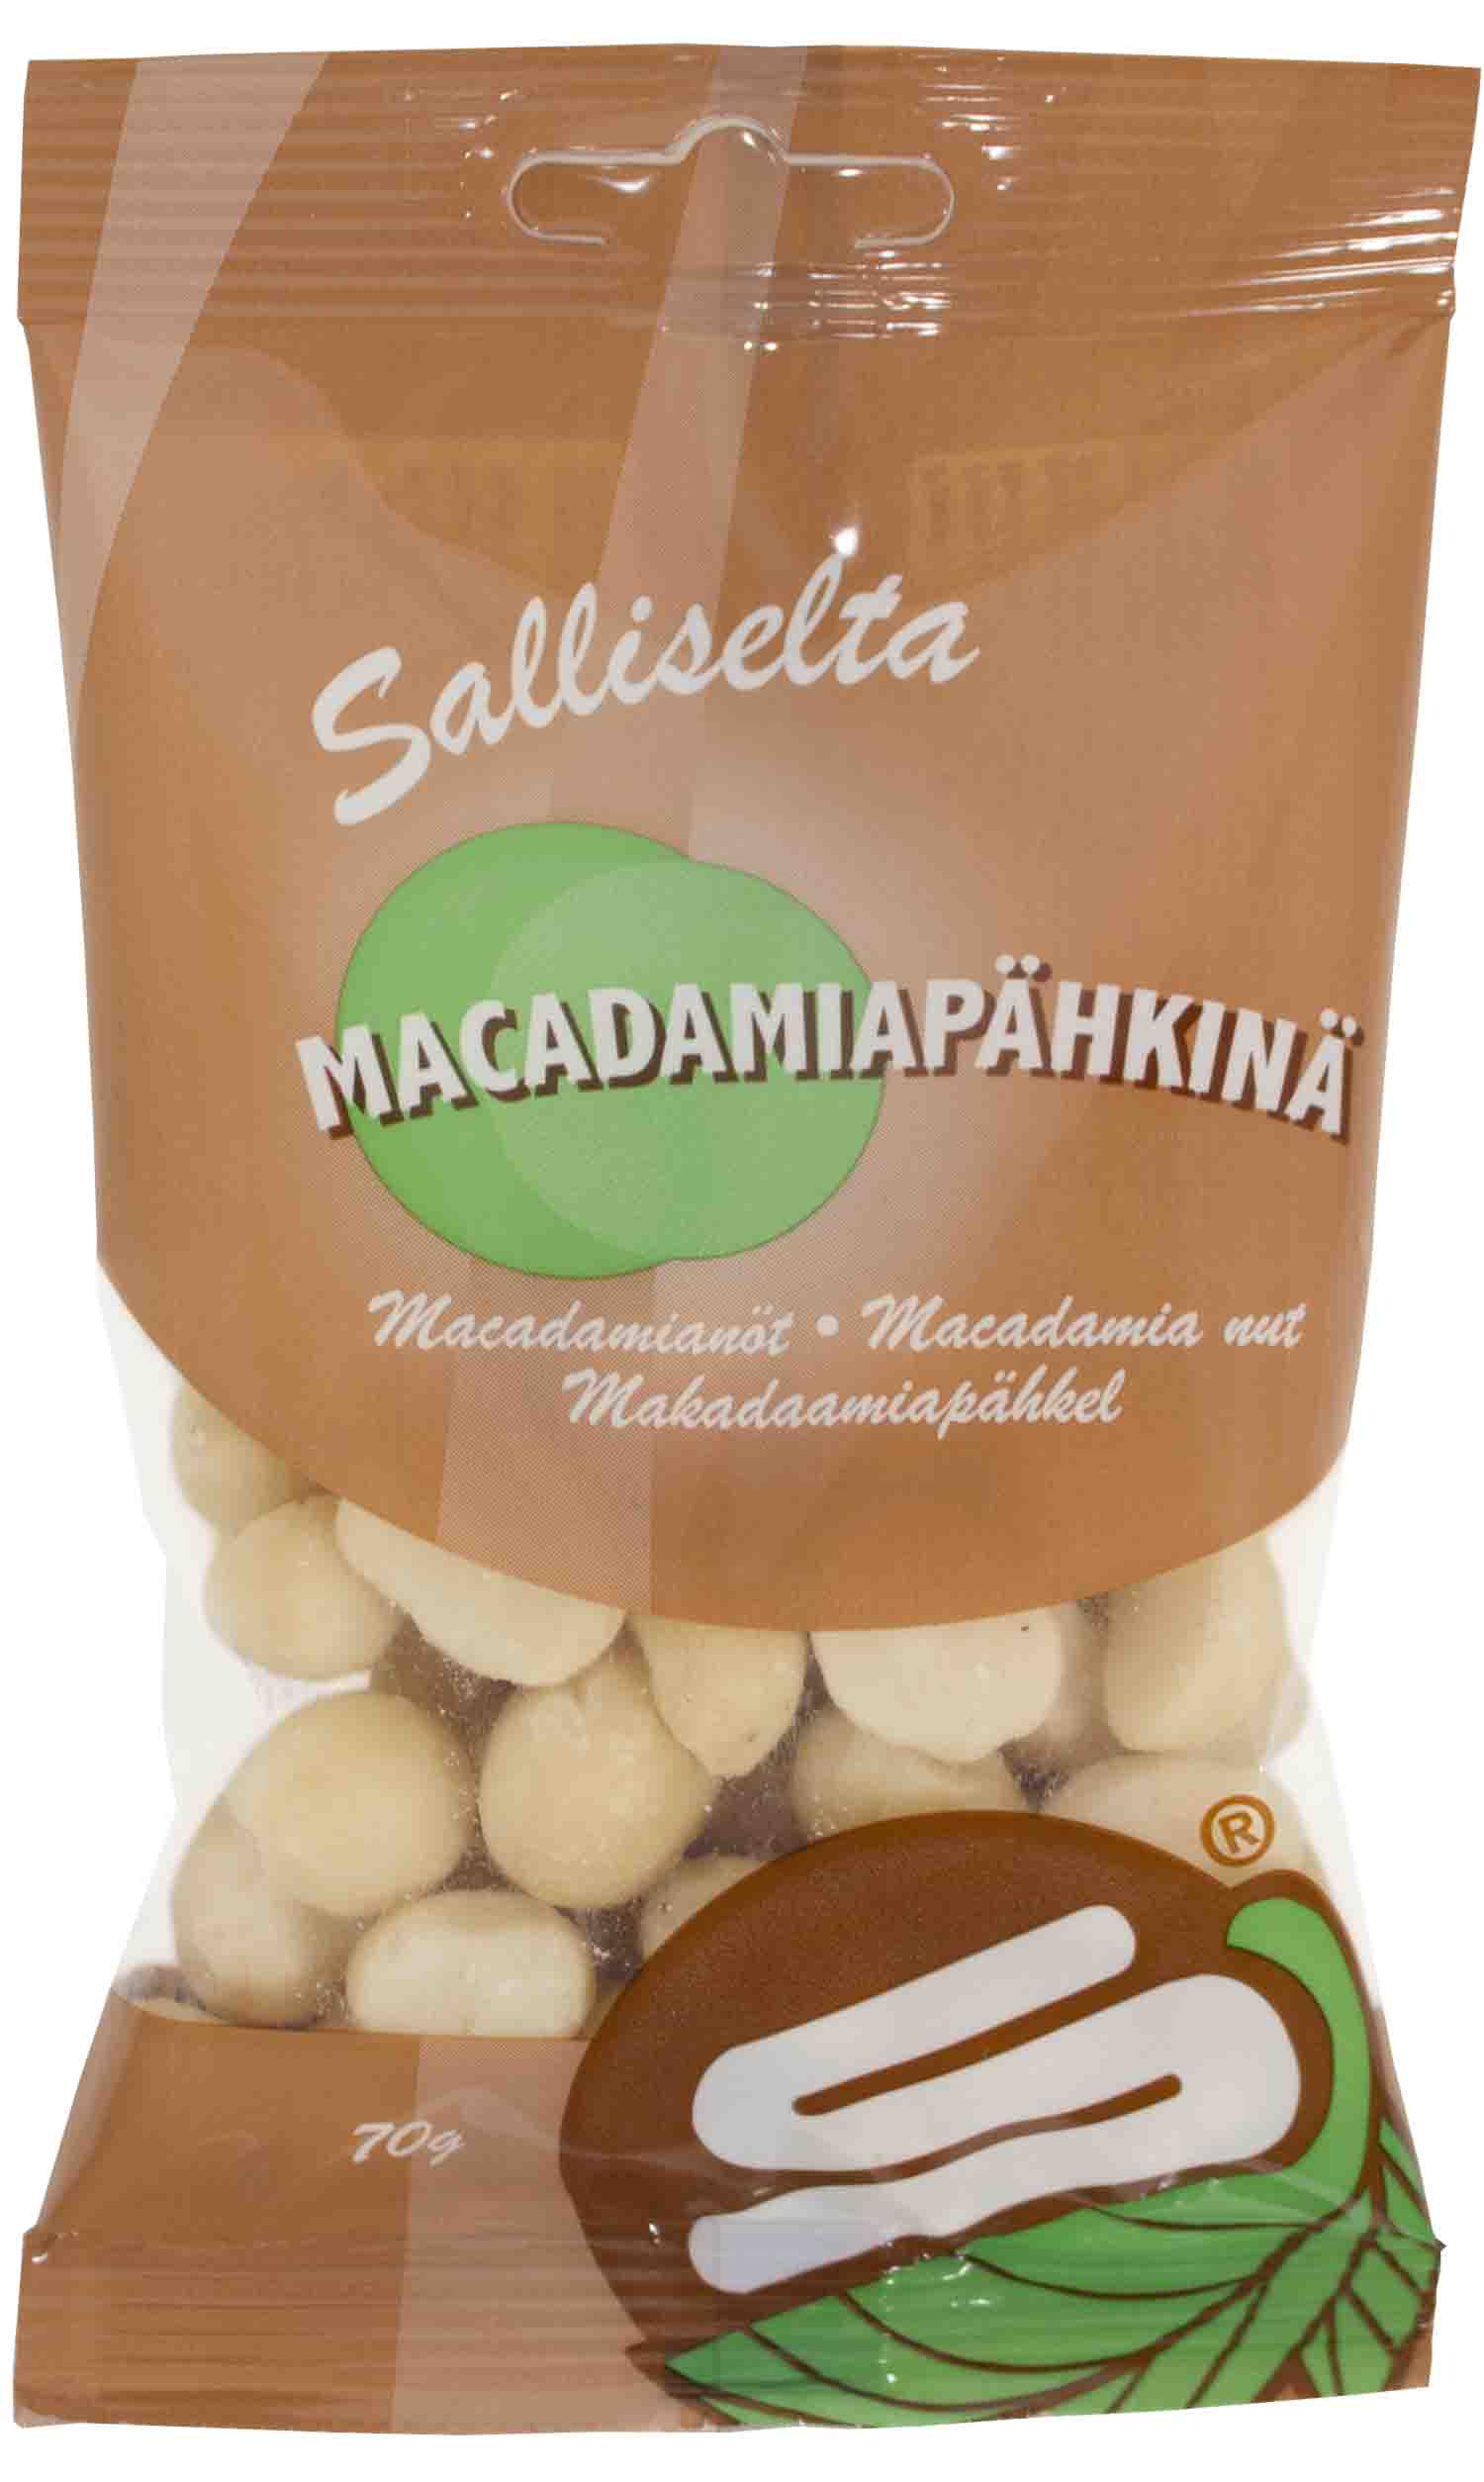 Macadamiapähkinä 70 g